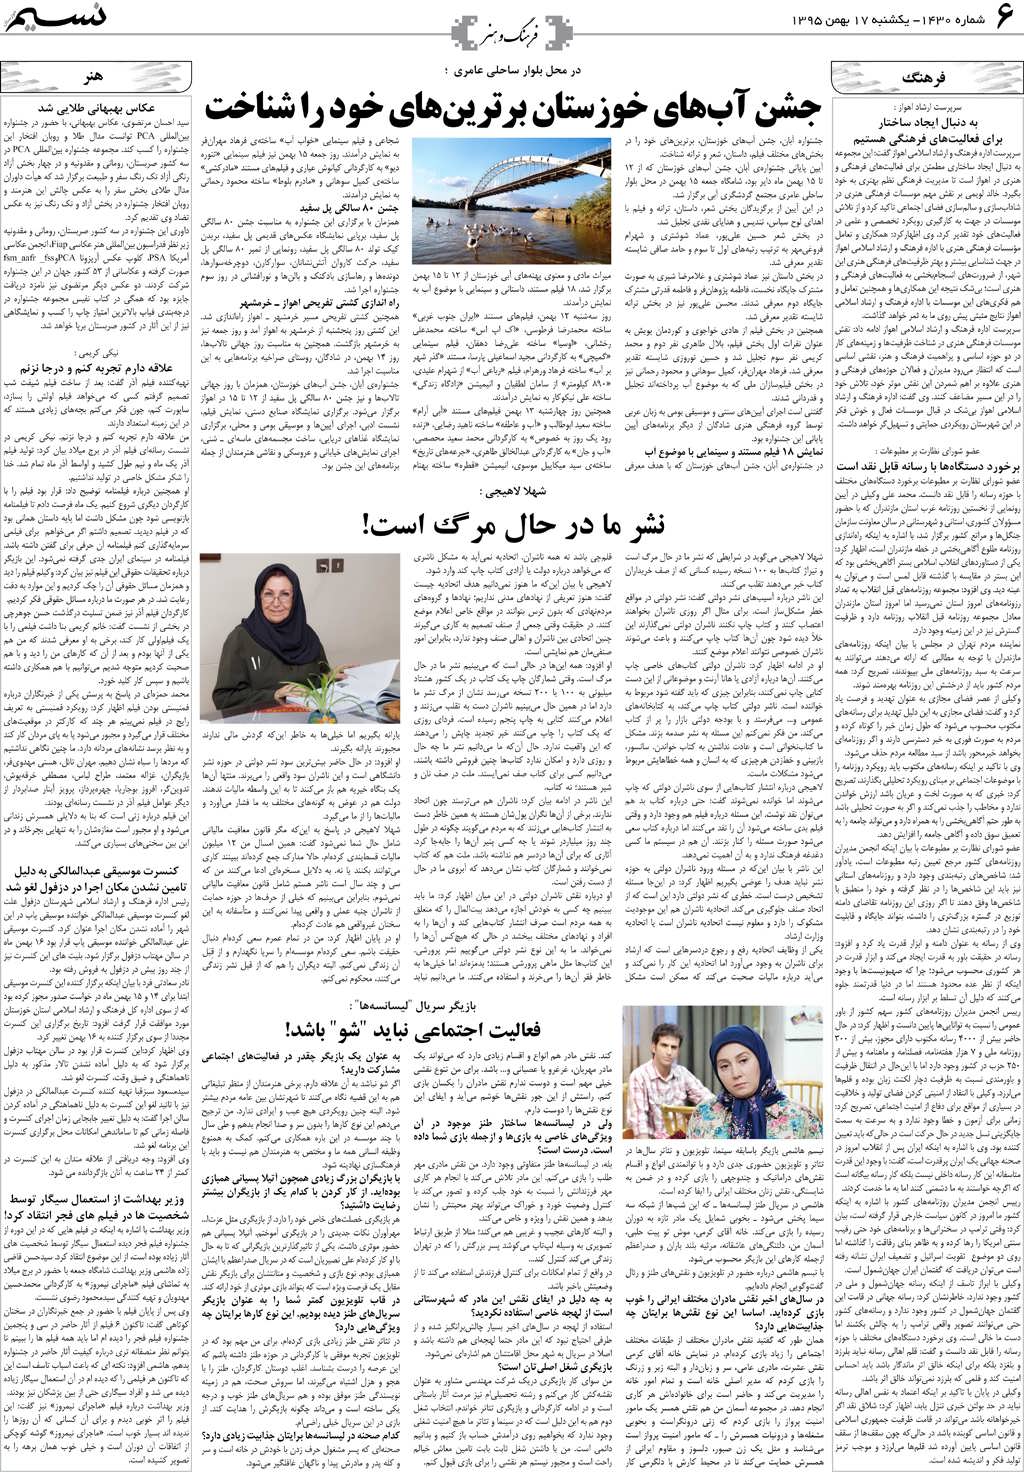 صفحه فرهنگ و هنر روزنامه نسیم شماره 1430